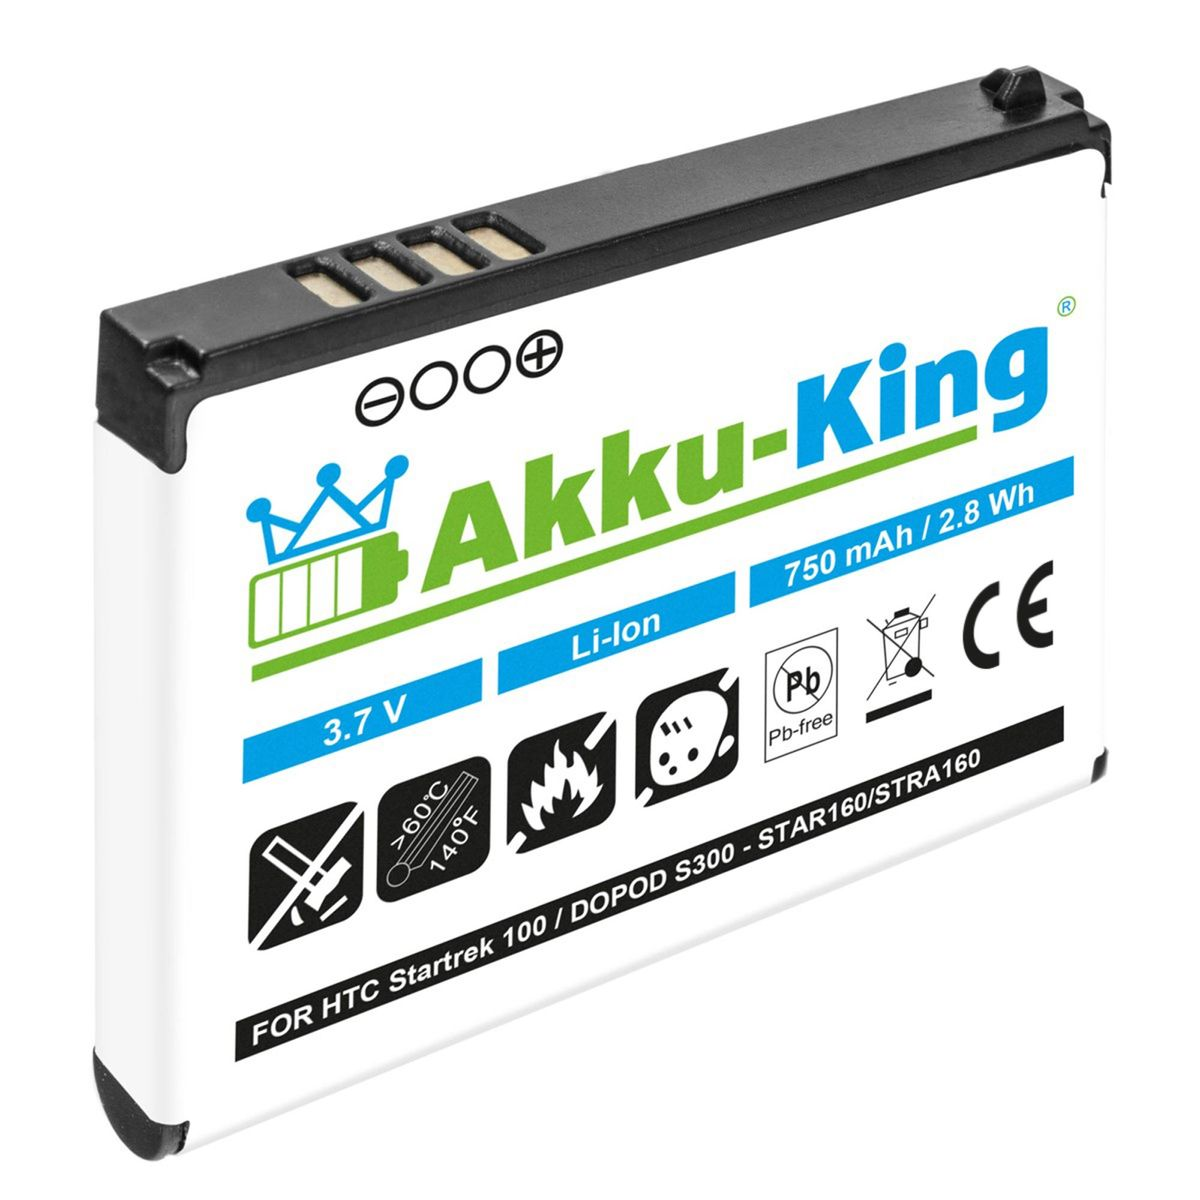 AKKU-KING Akku kompatibel HTC mit 3.7 Li-Ion 750mAh Volt, Handy-Akku, STAR160